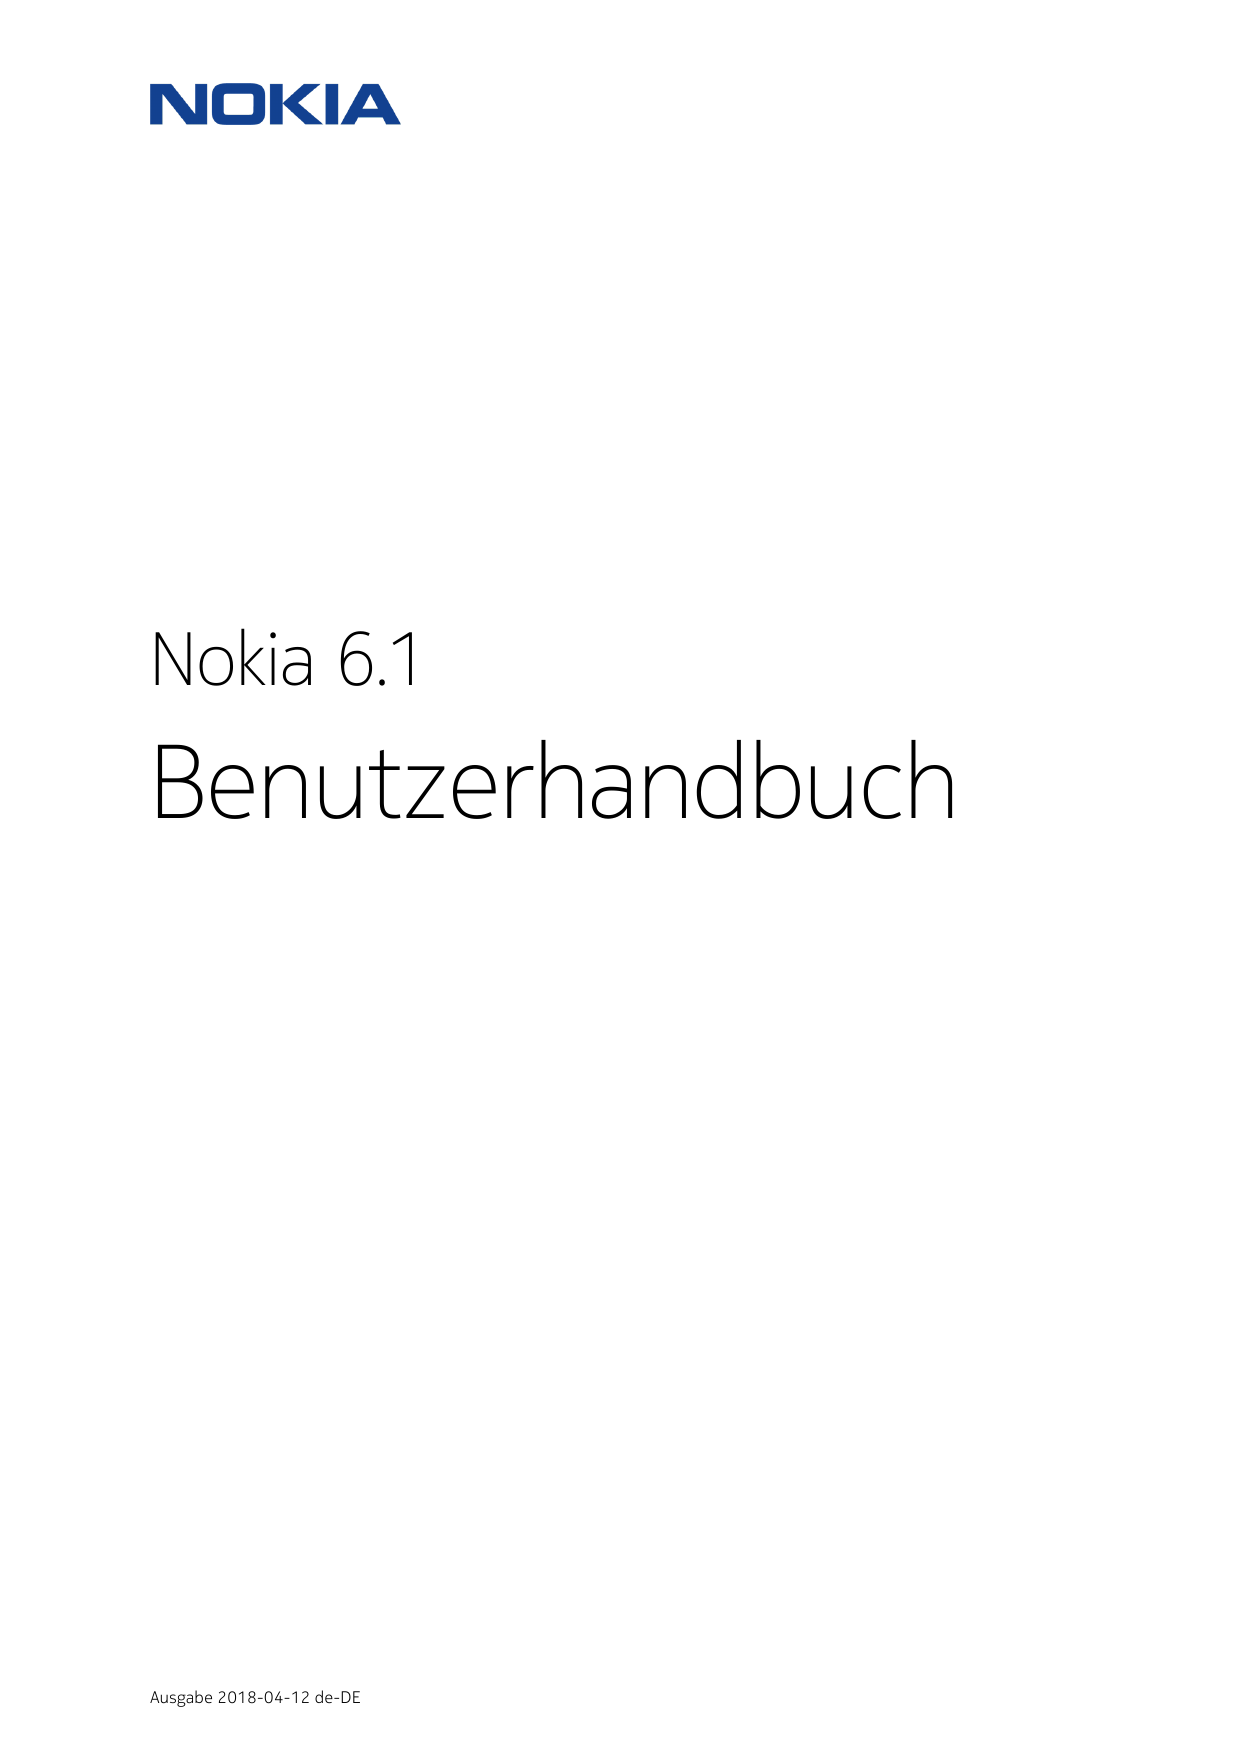 Nokia 6.1BenutzerhandbuchAusgabe 2018-04-12 de-DE